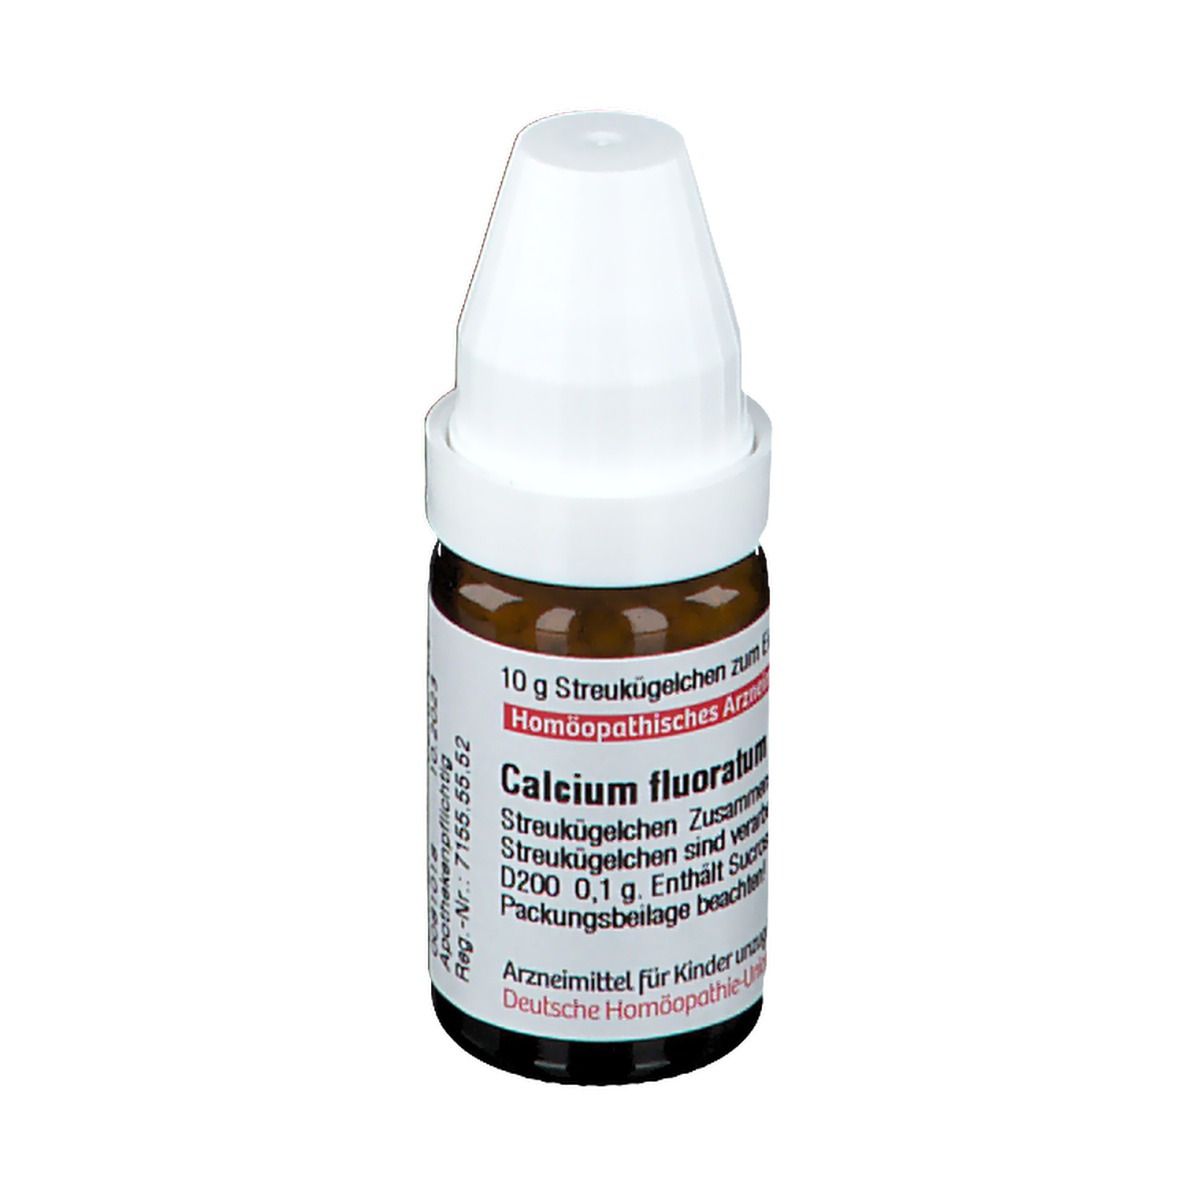 DHU Calcium Fluoratum D200